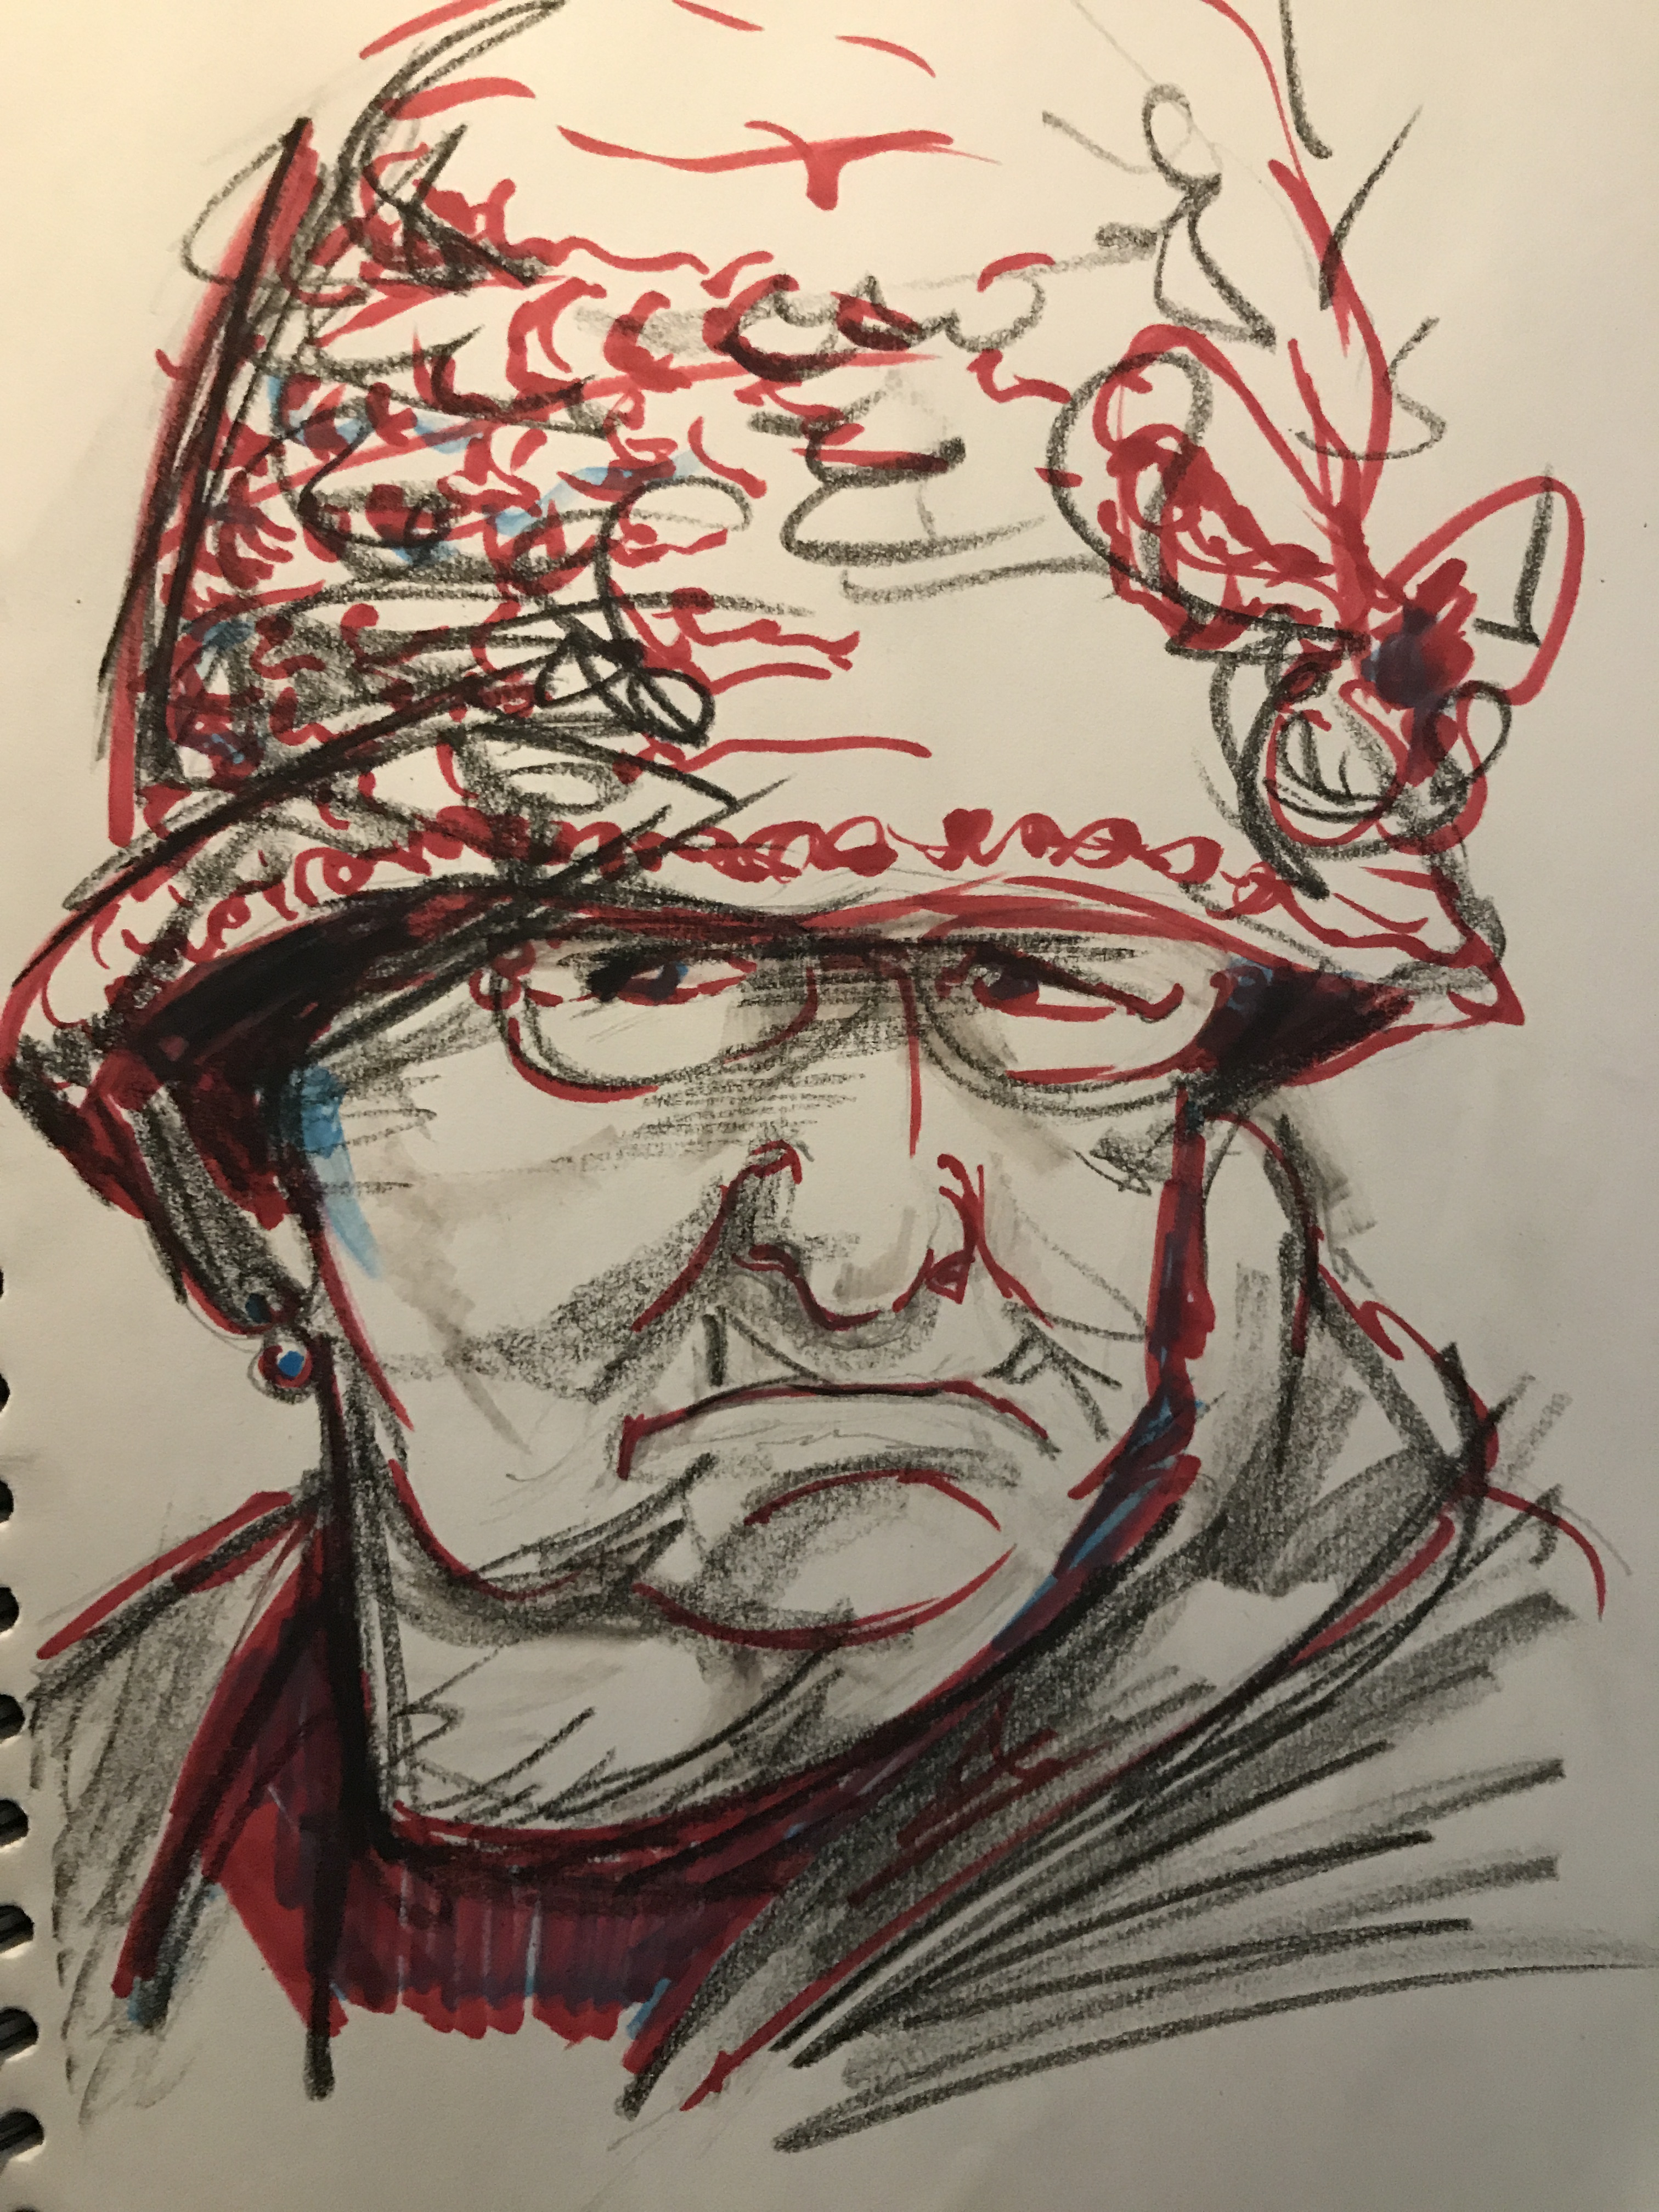  Technique mixte dessin portraits feutre rouge graphite  cours de dessin 